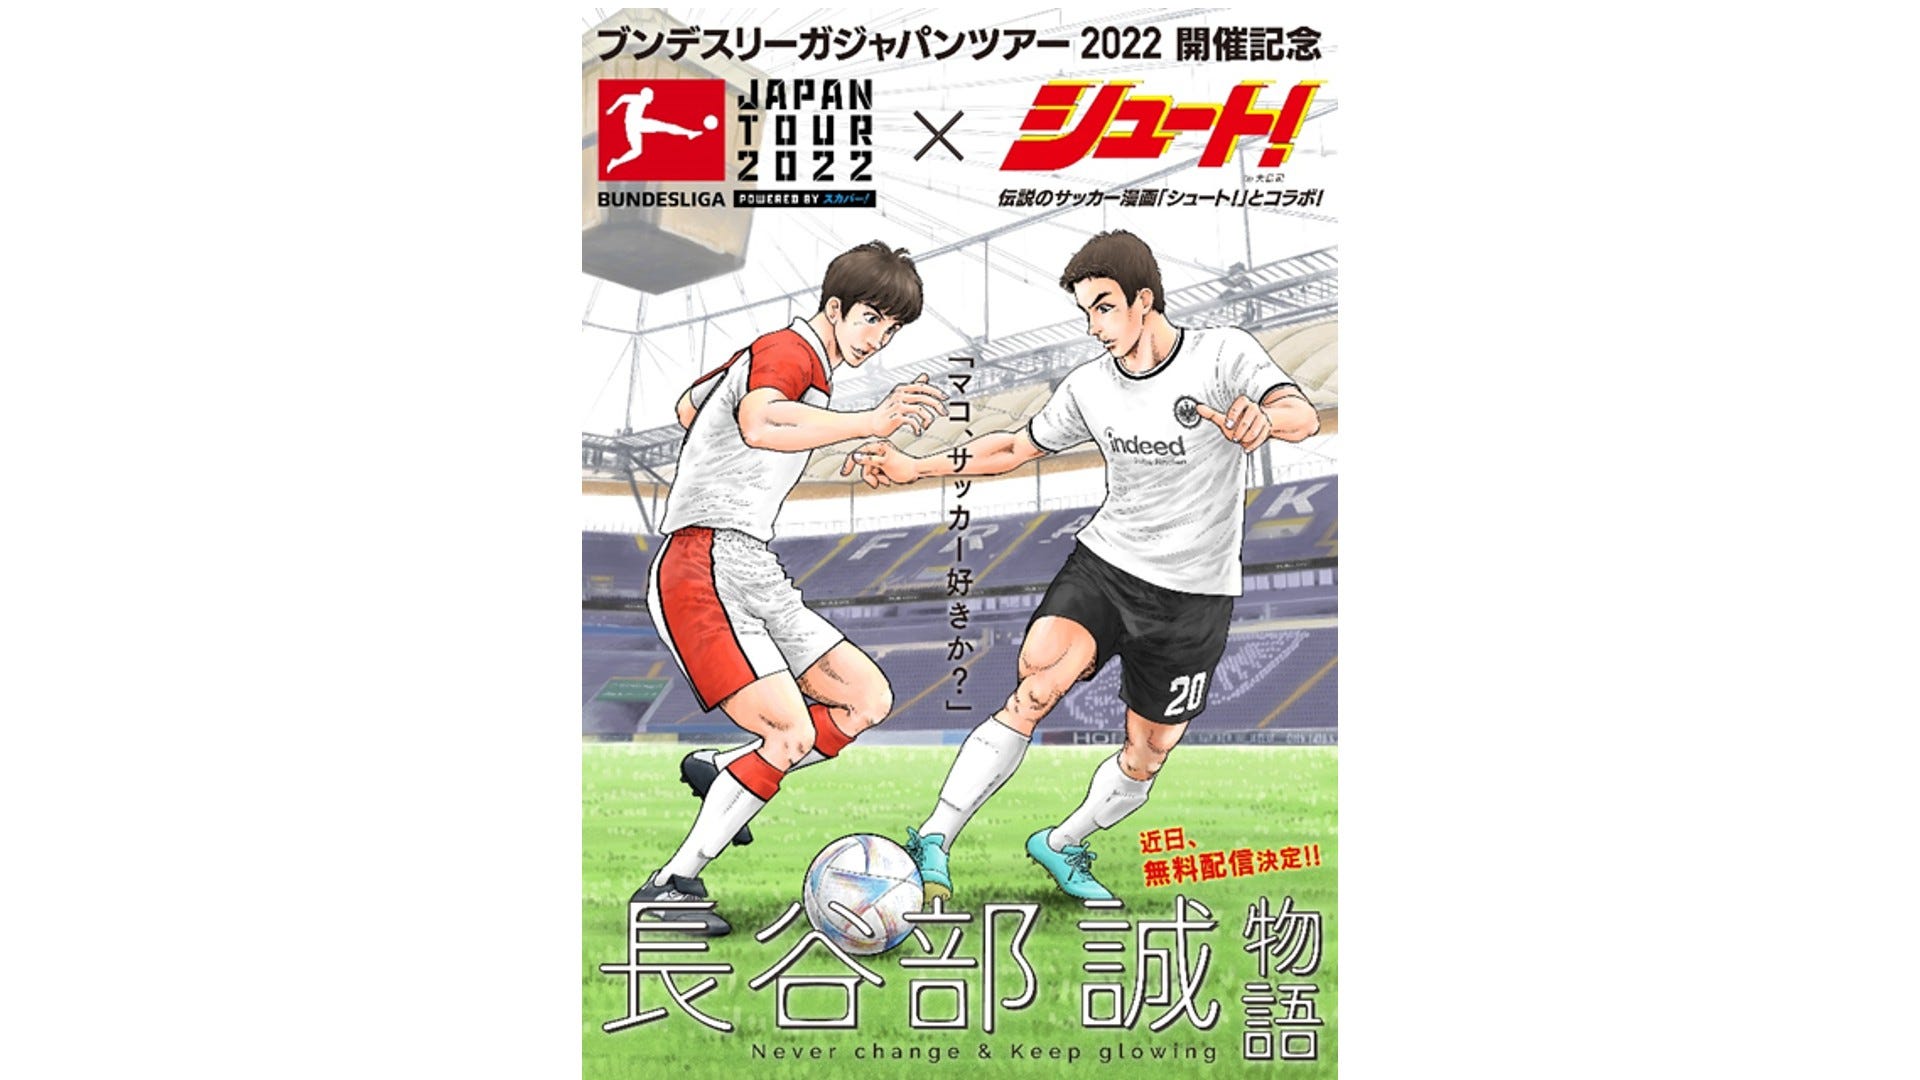 長谷部誠のサッカー人生が特別漫画に スカパーが人気漫画 シュート とのコラボ発表 Goal Com 日本